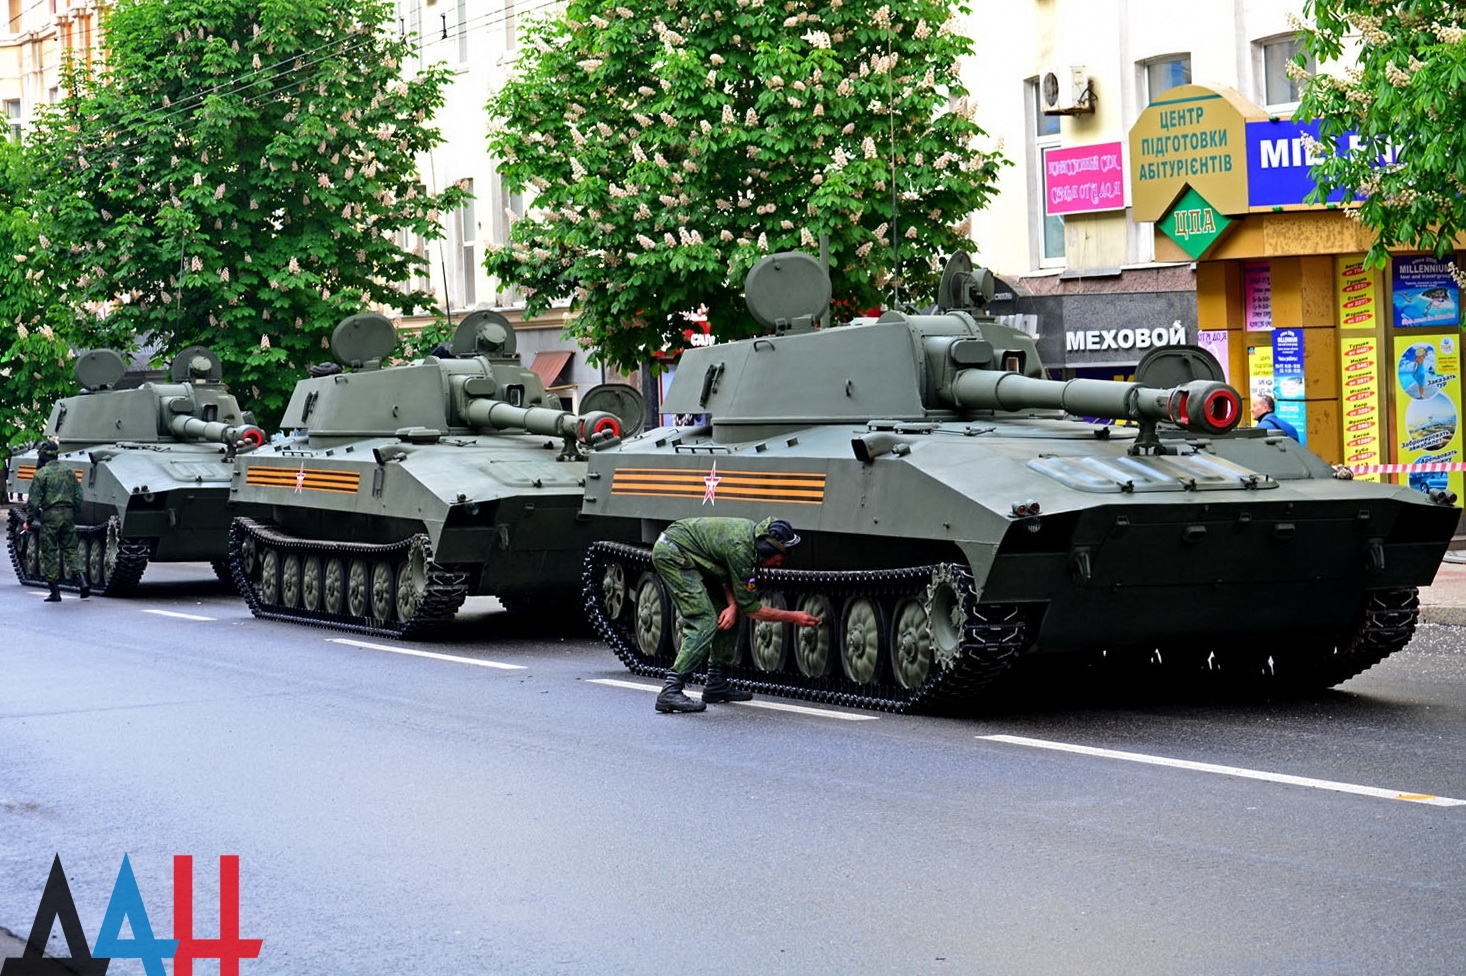 Натовп, танки і "Гради", Моторола в орденах: Окупований Донецьк відзначає 9 травня (ФОТО) - фото 3